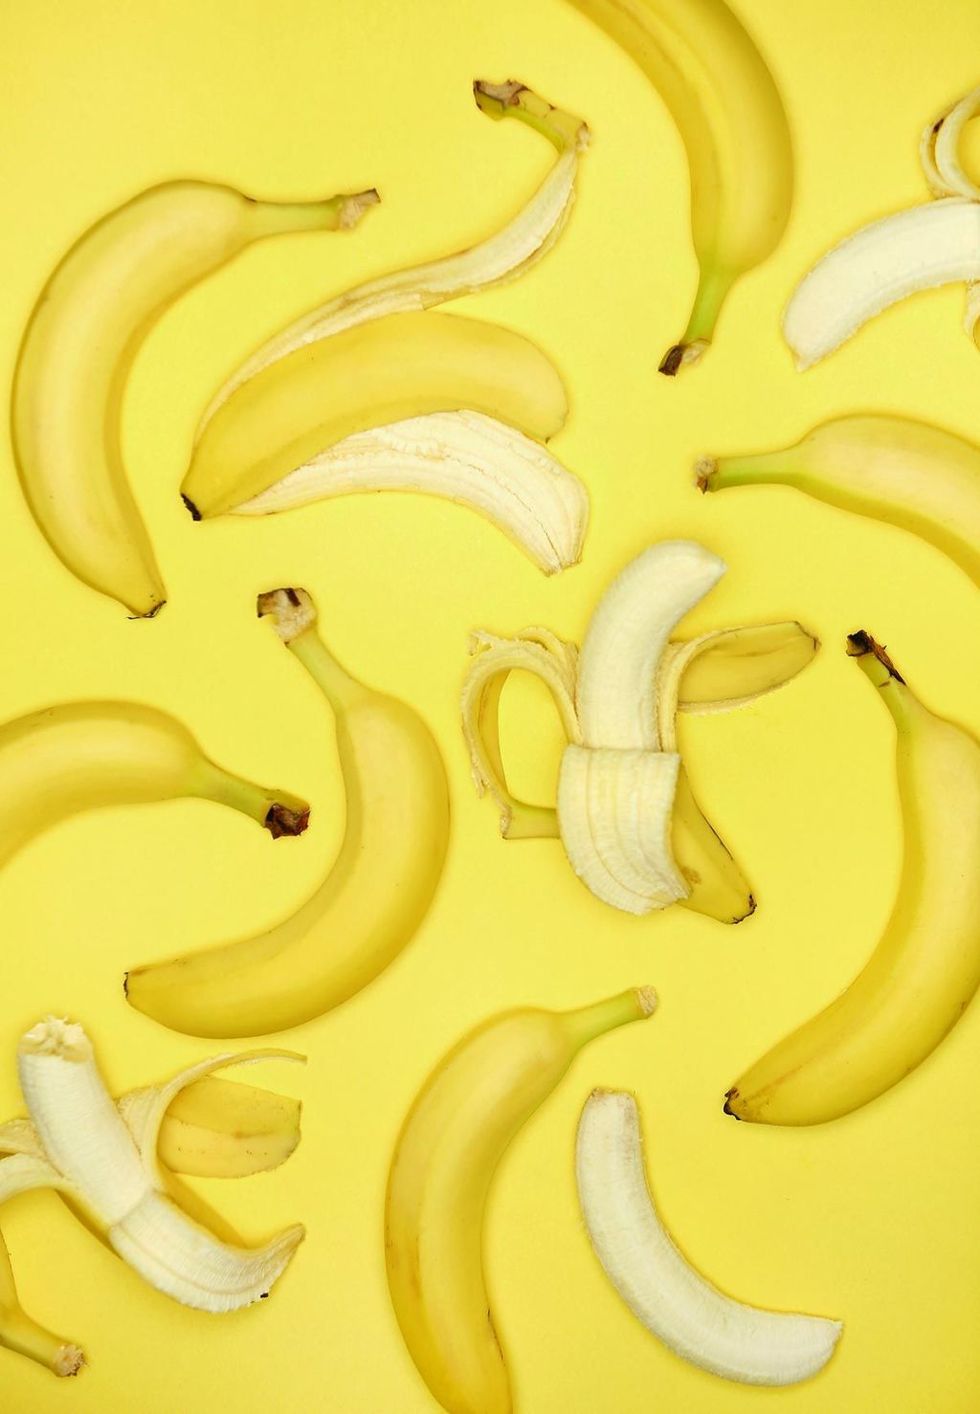 <p>バナナの皮って食べられるの？　と驚くなかれ。アジアや南米では何百年もの間、さまざまなレシピで食べられてきたそうだ。「バナナの皮は伝統的にブラジルのケーキに使われています。おいしいだけでなく、健康な腸をサポートするのに非常に良い不溶性繊維の摂取源なのです」と、ノヴァコヴィッチさんは説明する。ただし今回おすすめる果物の皮のなかで唯一、生で食べない方がよいものなので、火を通すレシピを選ぶのが正解。また、バナナの皮についた殺虫剤について警告する専門家もいるので、食べるときはしっかり洗うことを心がけて。<span class="redactor-invisible-space"></span></p>